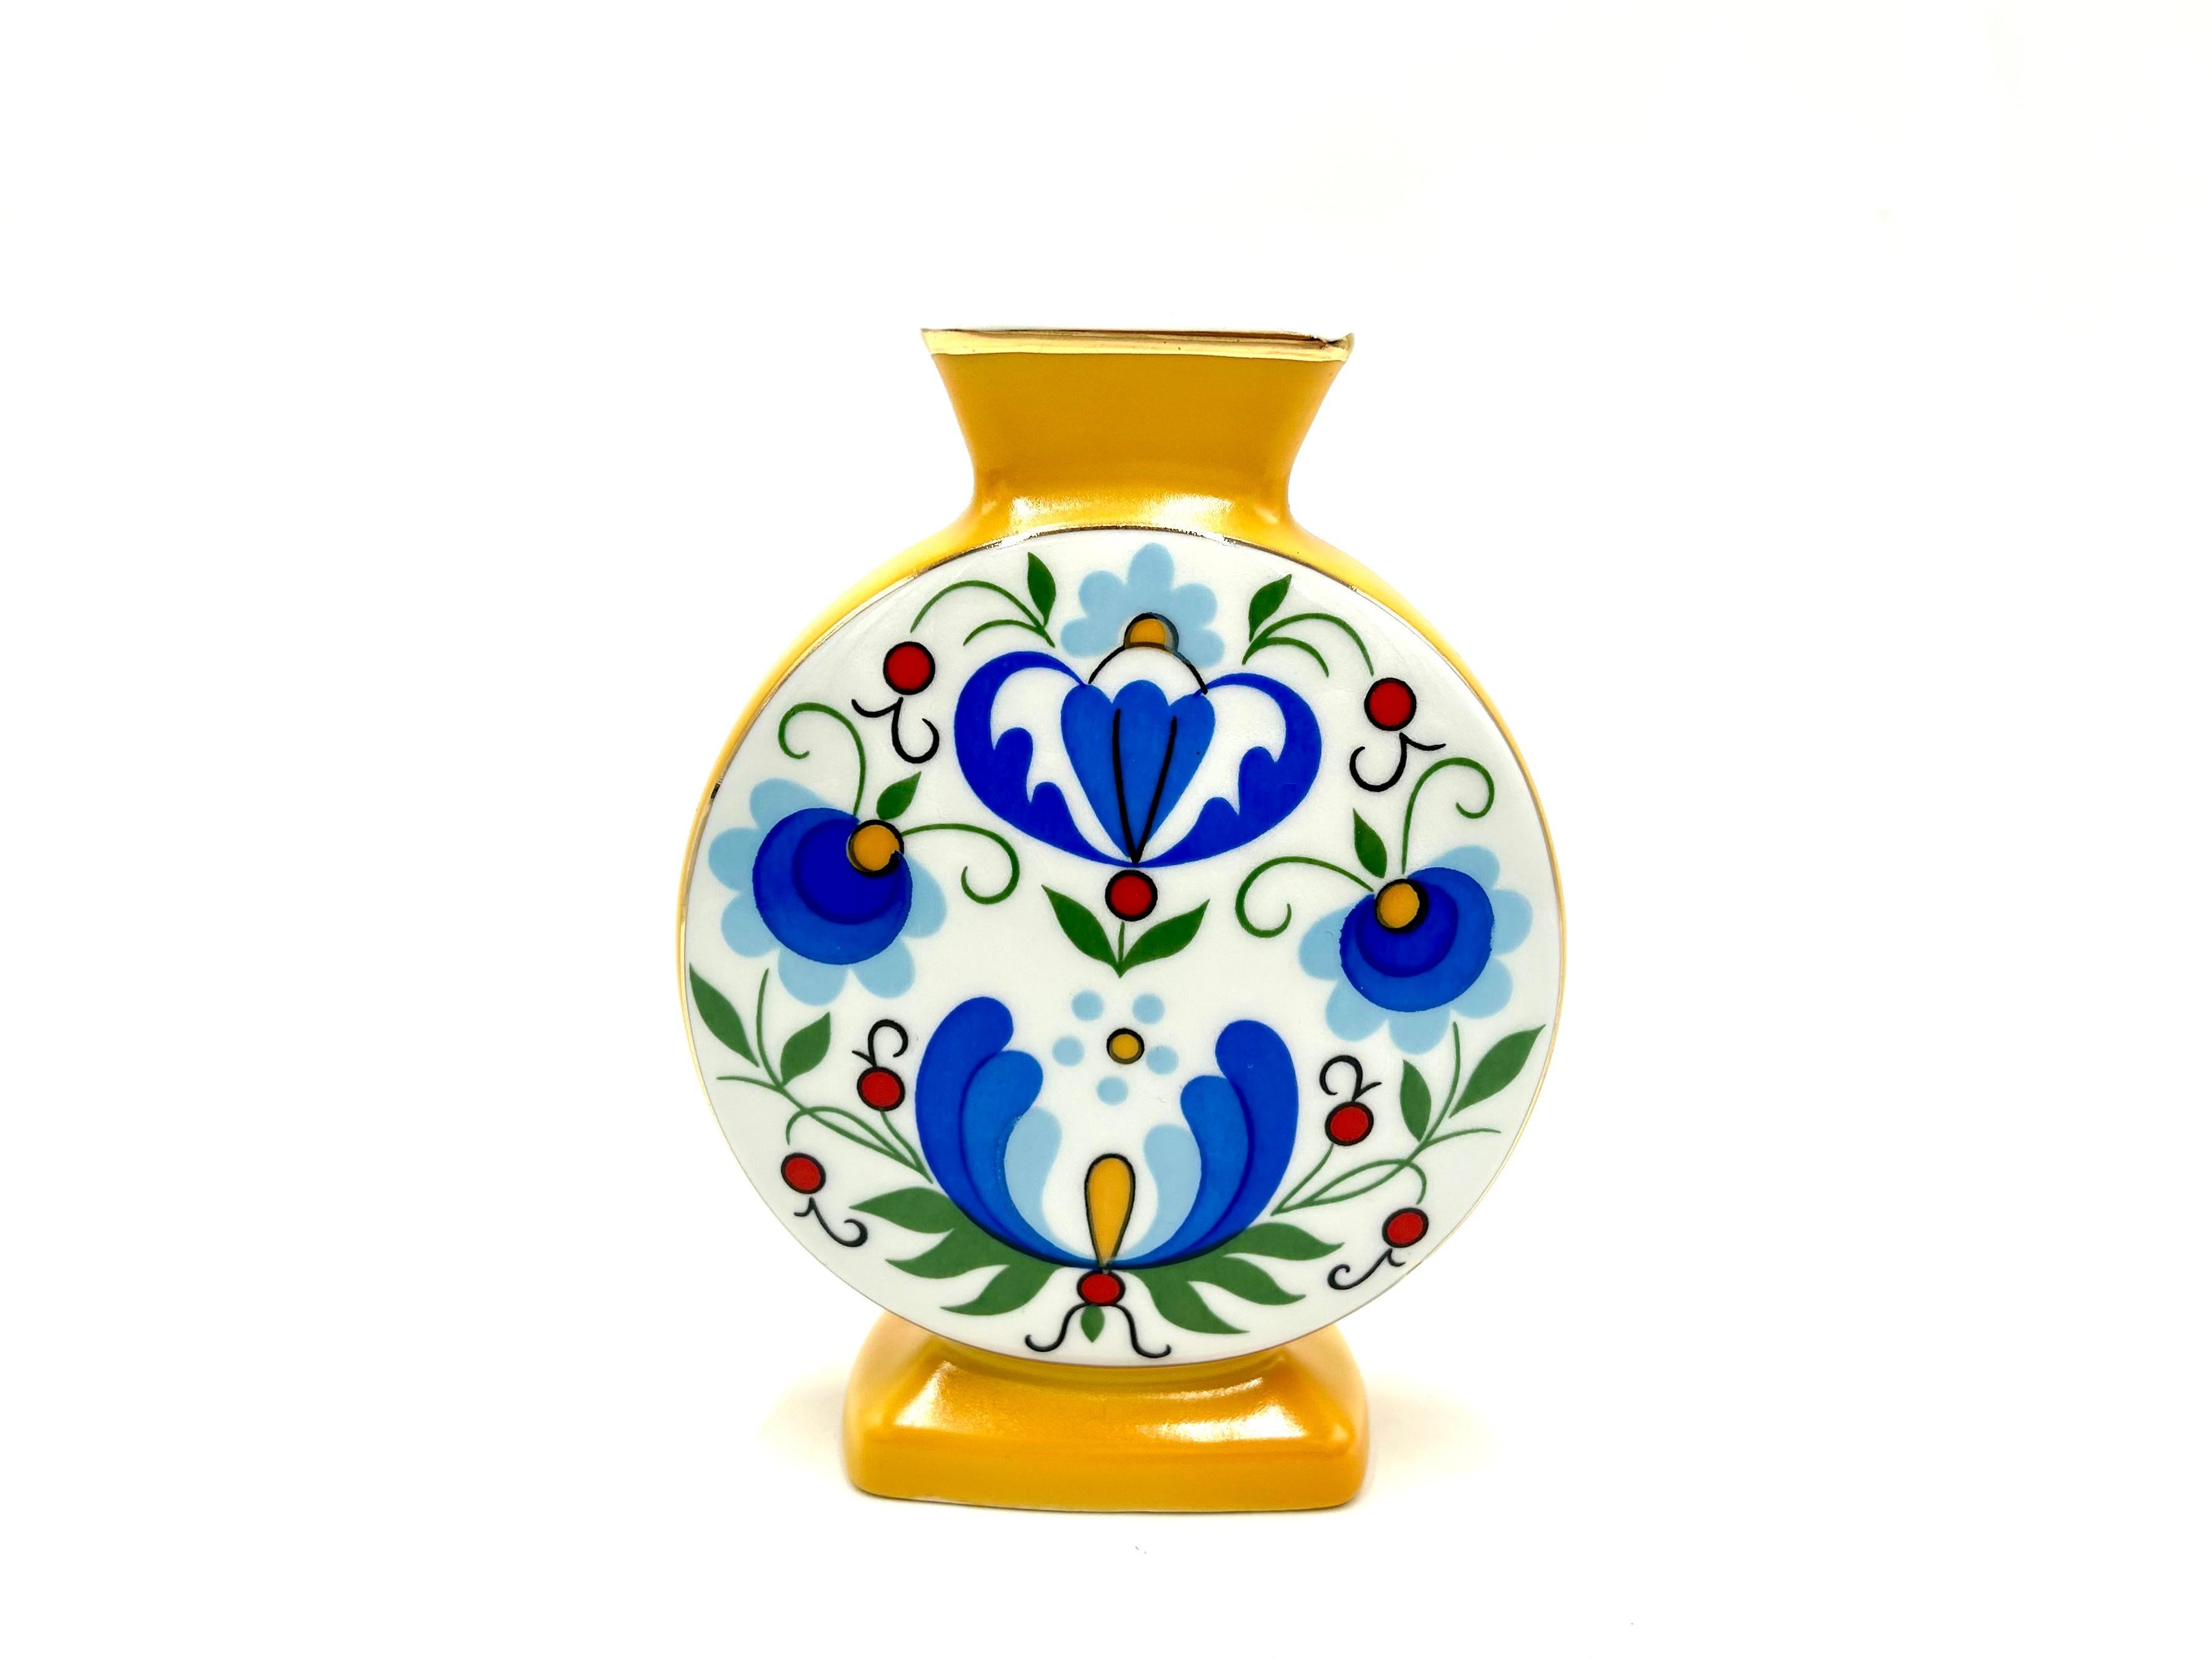 Eine kleine Vase mit volkstümlichen Mustern

Produziert in Polen von Zakłady Porcelany Stołowej Lubiana

Sehr guter Zustand ohne Schäden

Höhe 16cm Breite 12cm Tiefe 4cm